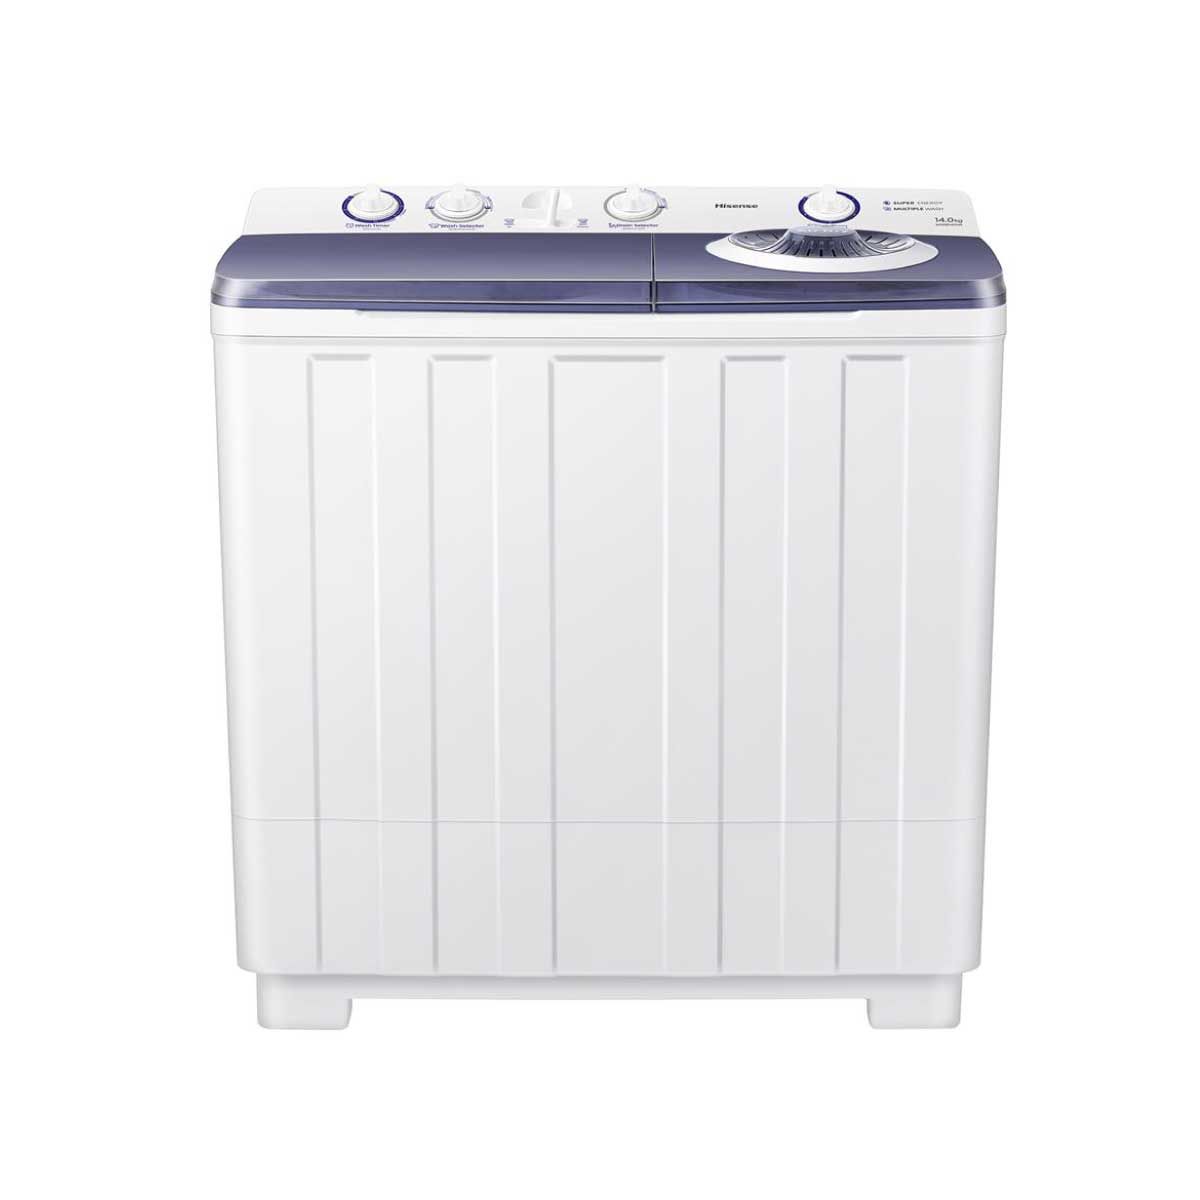 HISENSE เครื่องซักผ้า 2 ถัง 14Kg. สีขาว รุ่น WSRB1401W